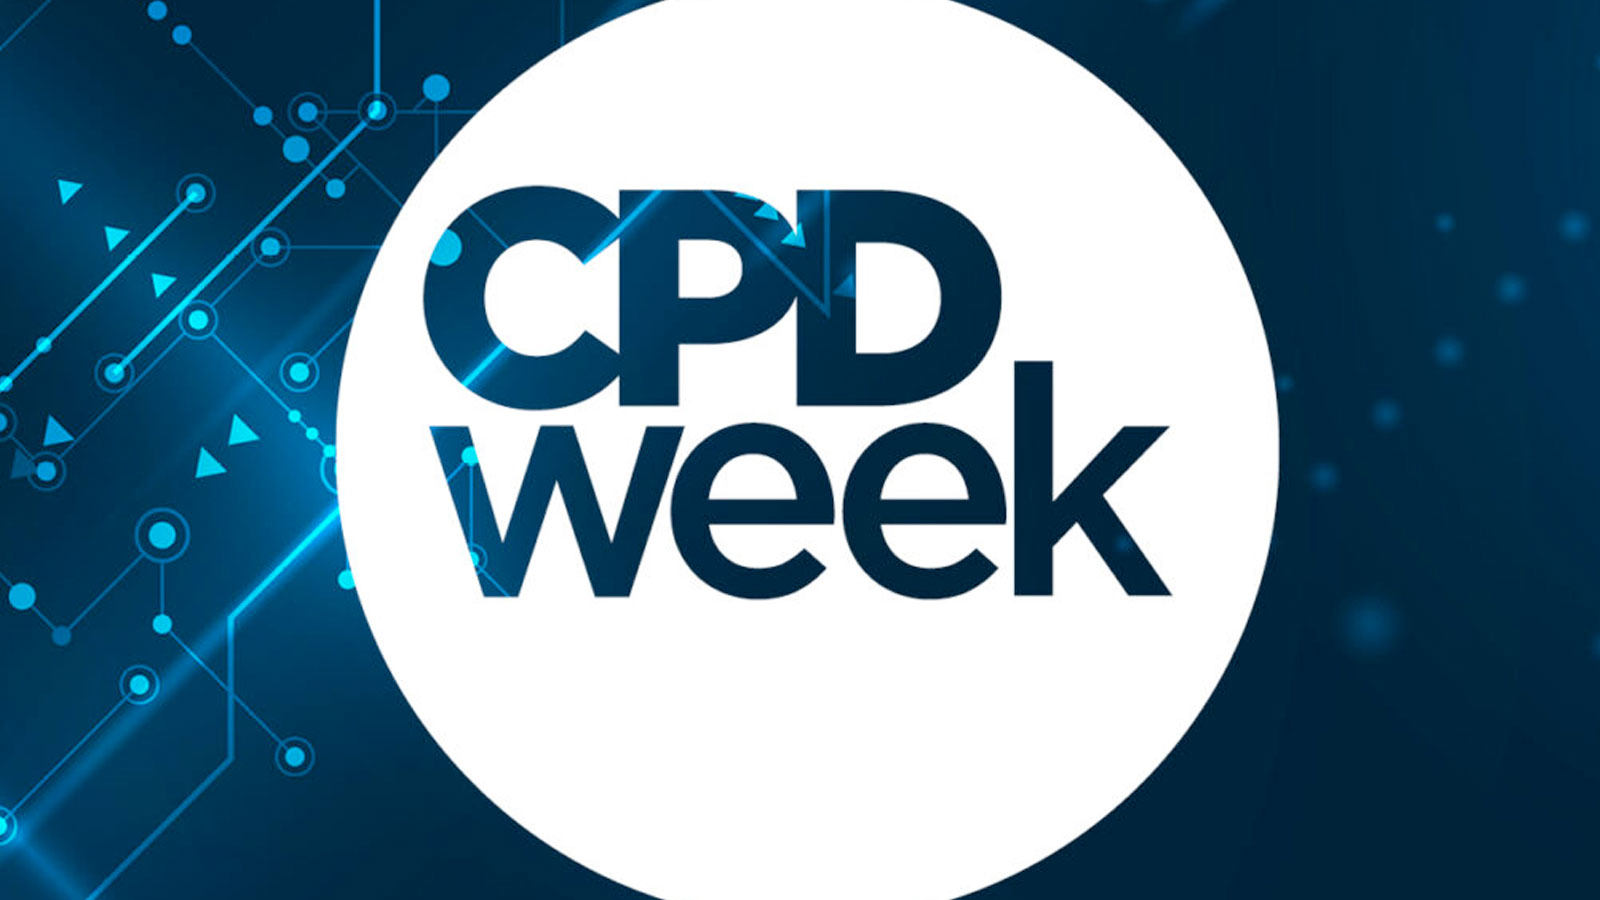 CPD Week